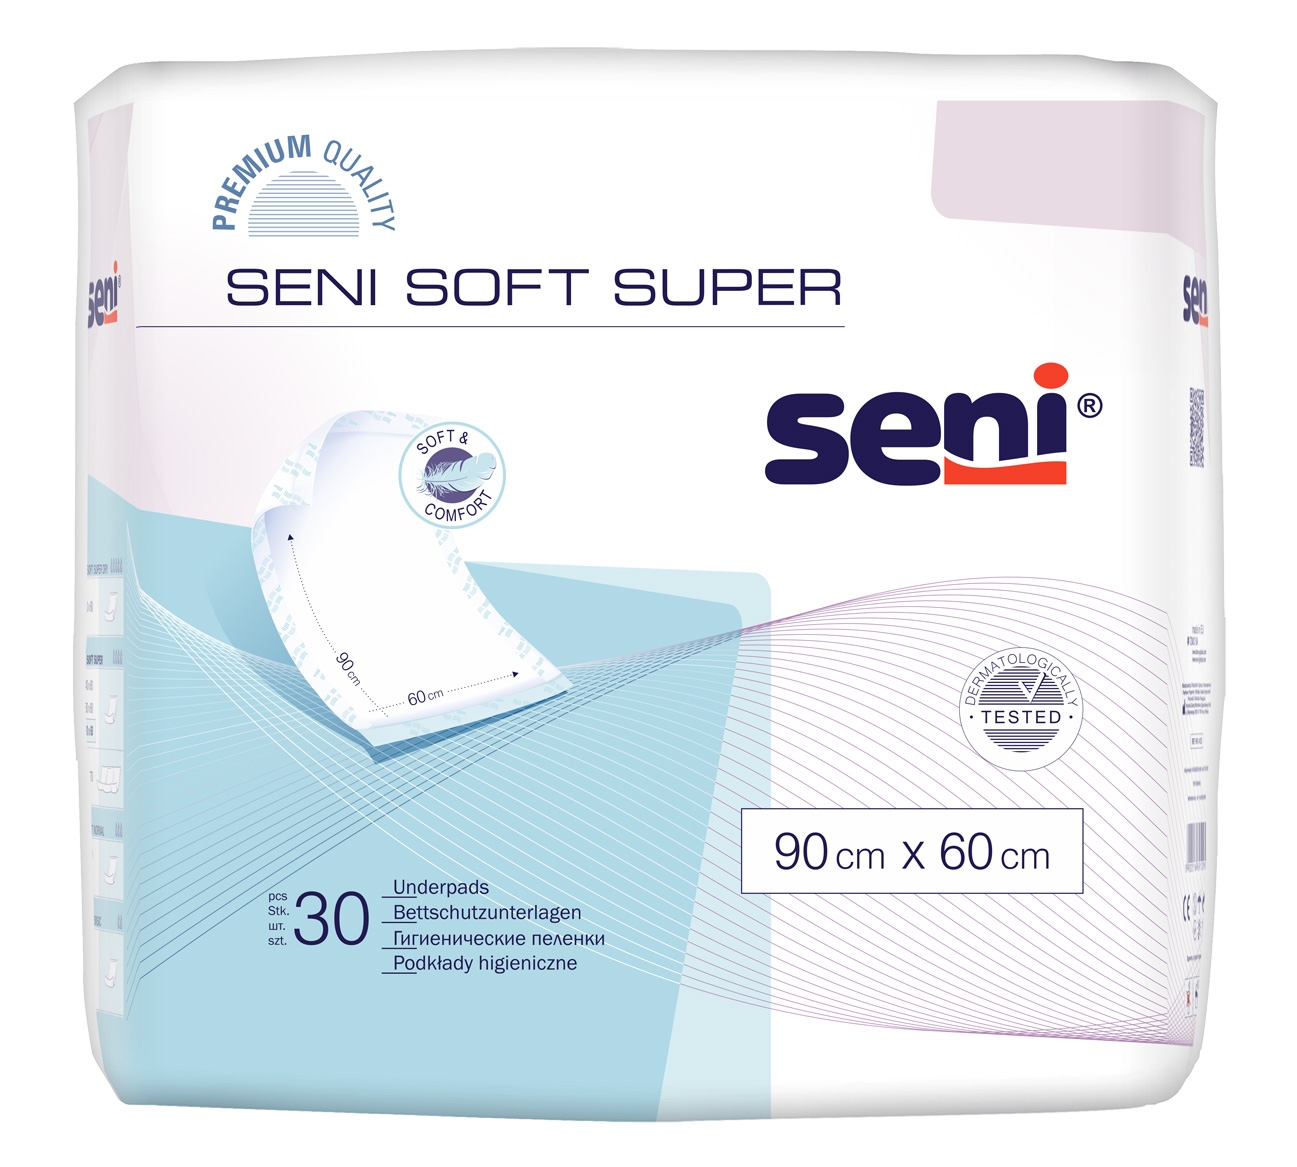 SENI Soft SUPER - Krankenunterlagen 90 x 60 cm Flocken - 120 Stück